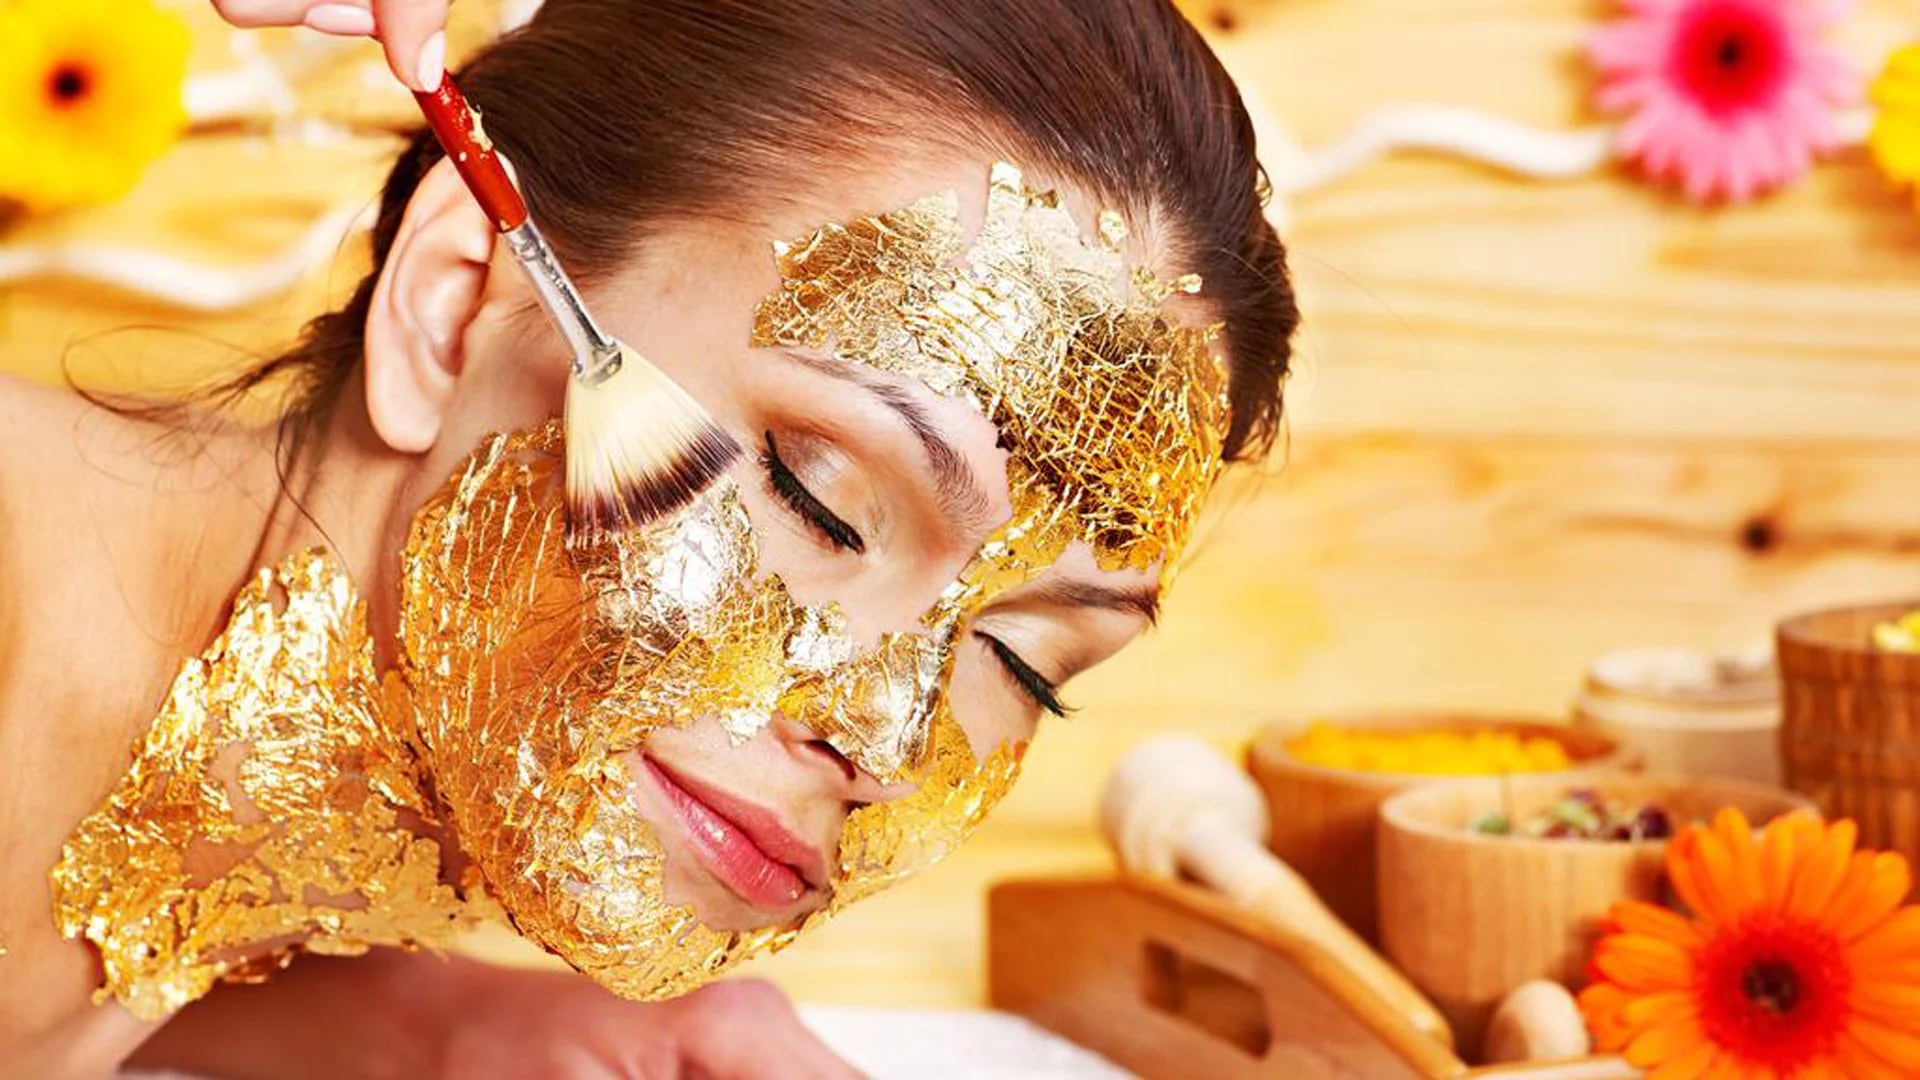 Última moda, las mascarillas de oro. Ayudan a rejuvenecer la piel y dar luminosidad (Kempinski)